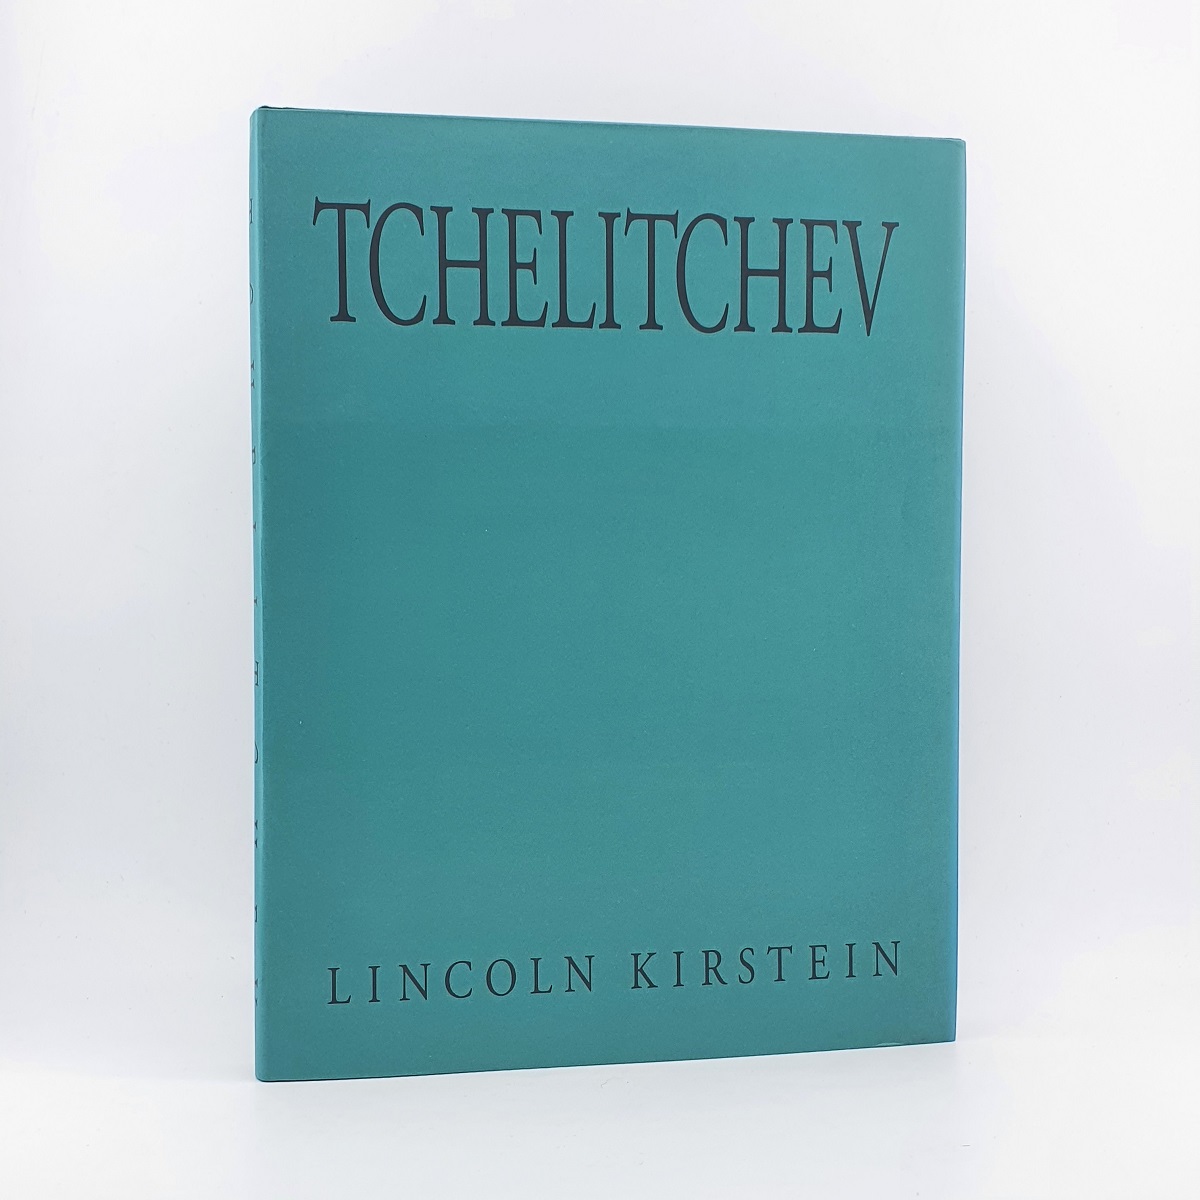 Tchelitchev - Lincoln Kirstein.